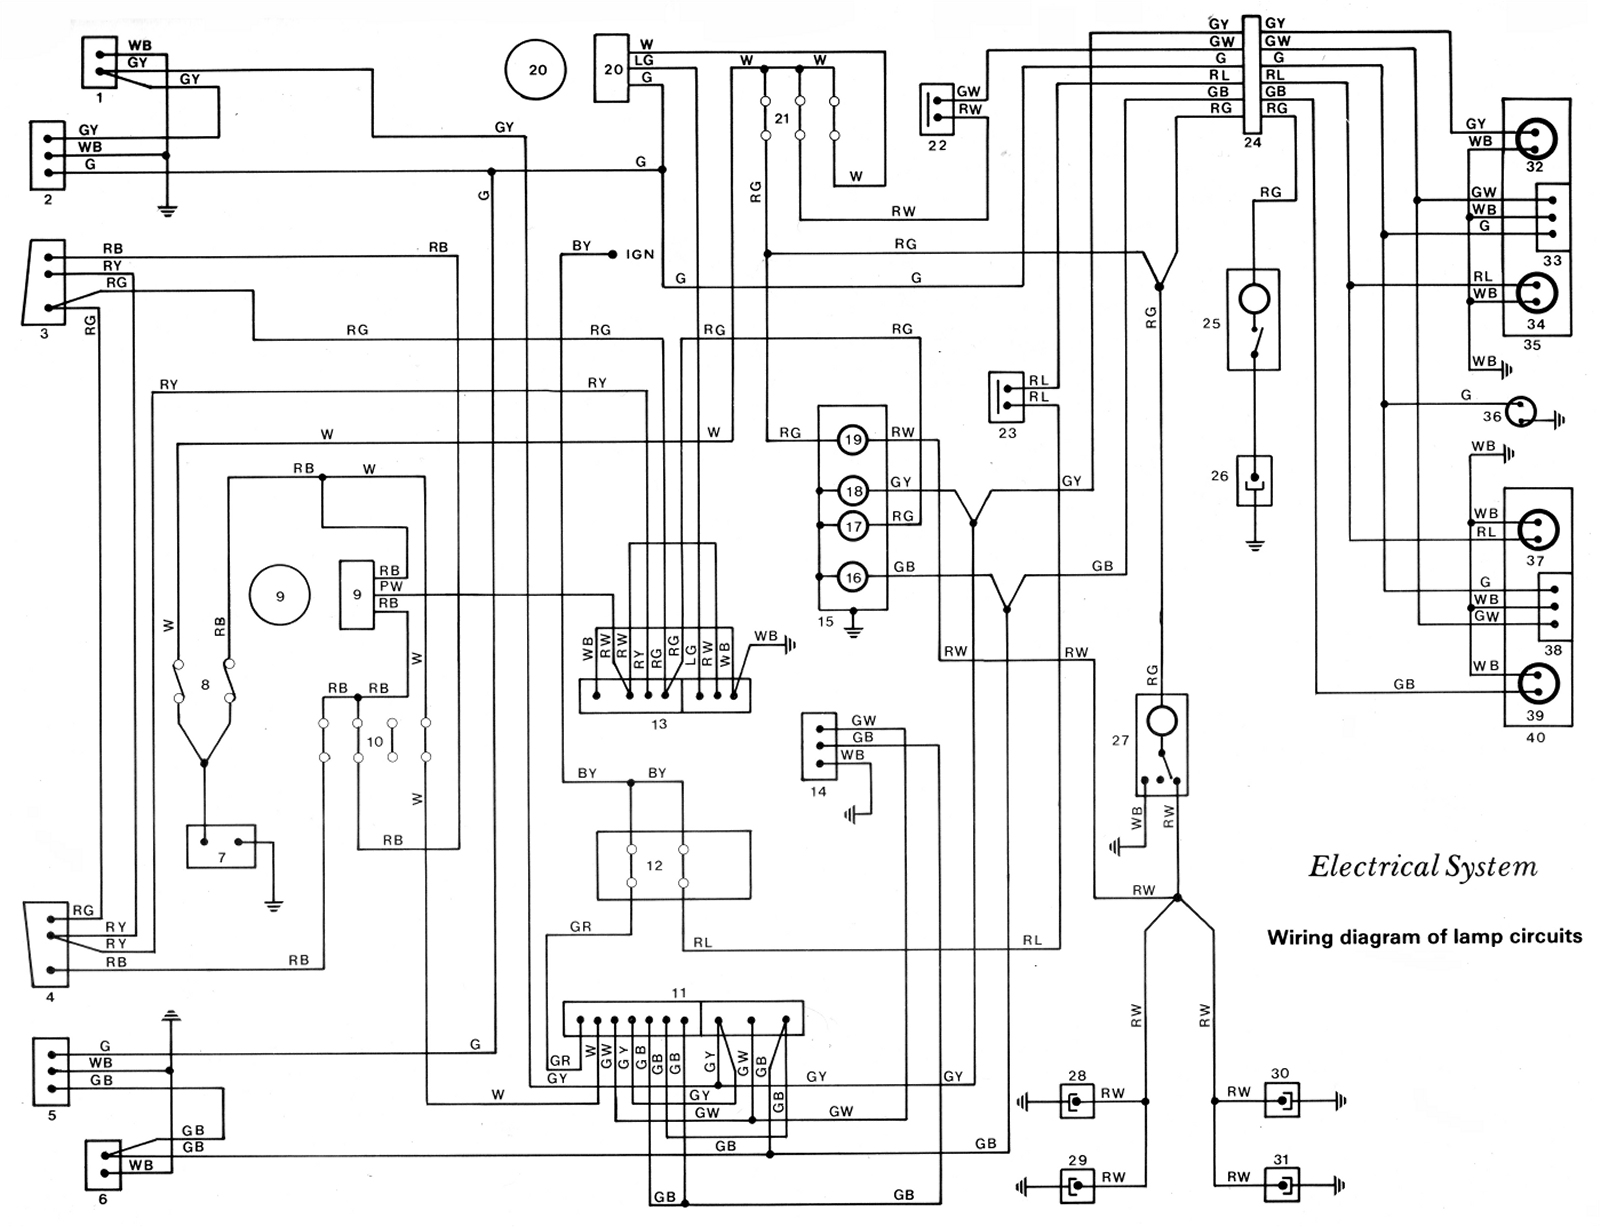 File:KE70 Wiring Diagram - Lamp Circuit Schematic.jpg